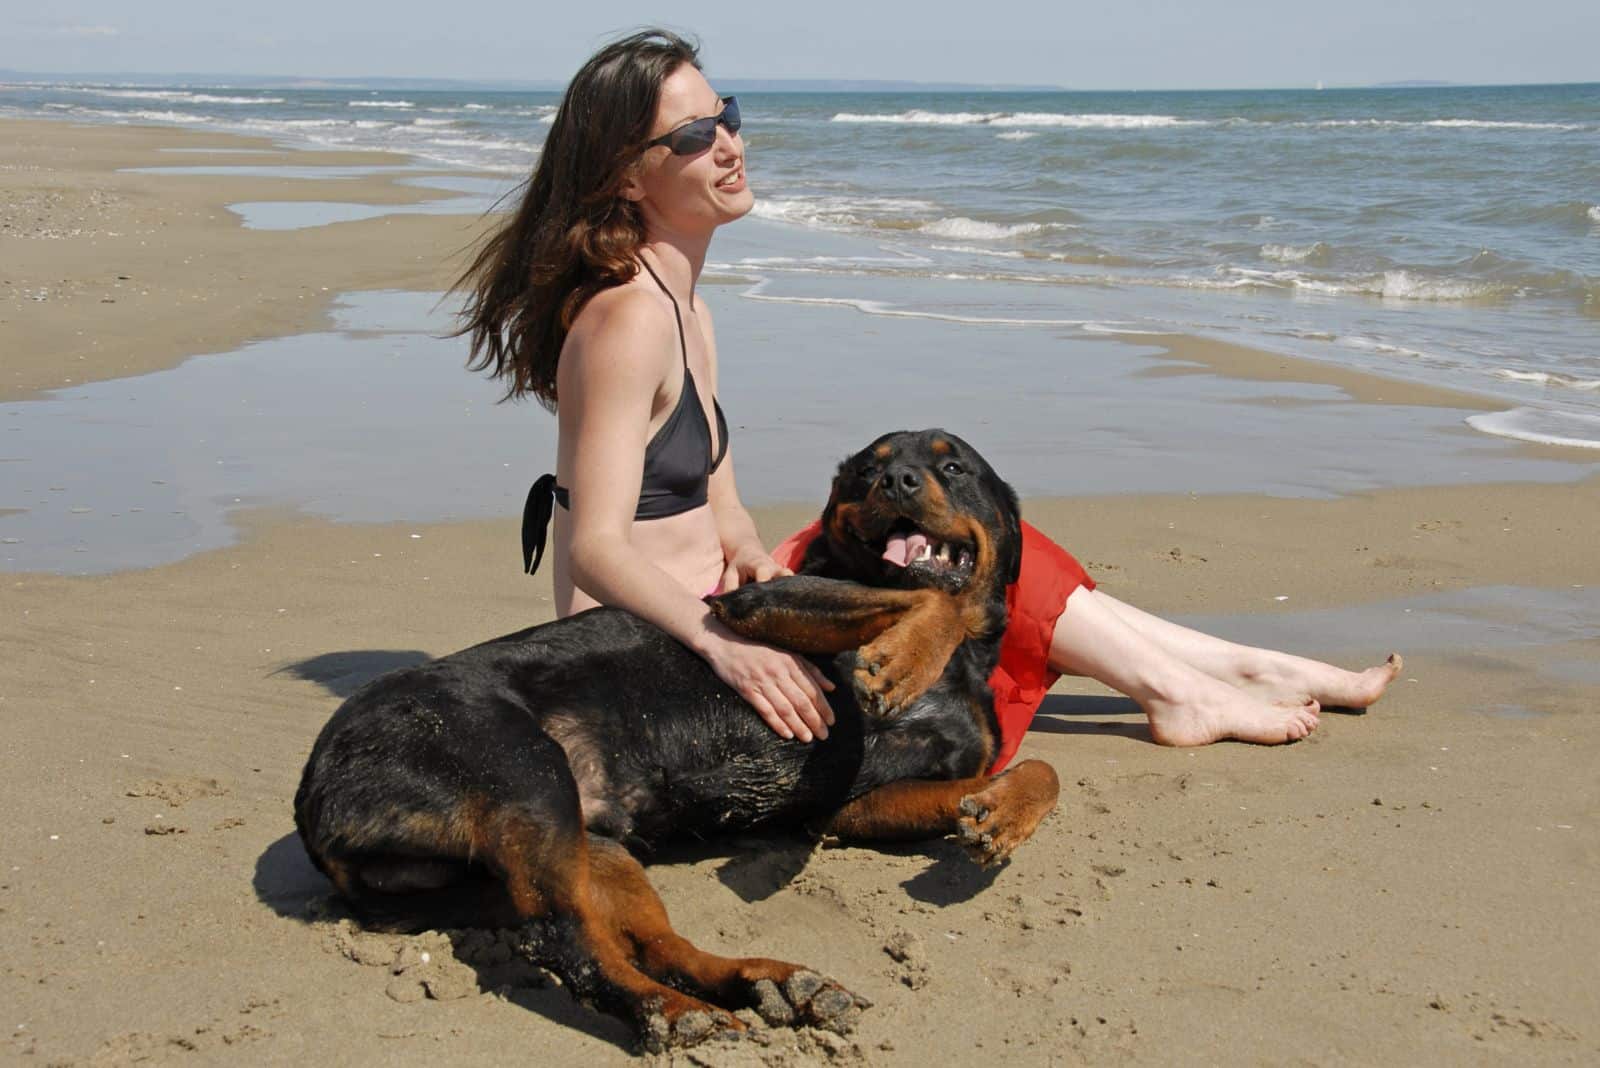 a woman with a Rottweiler enjoys the beach